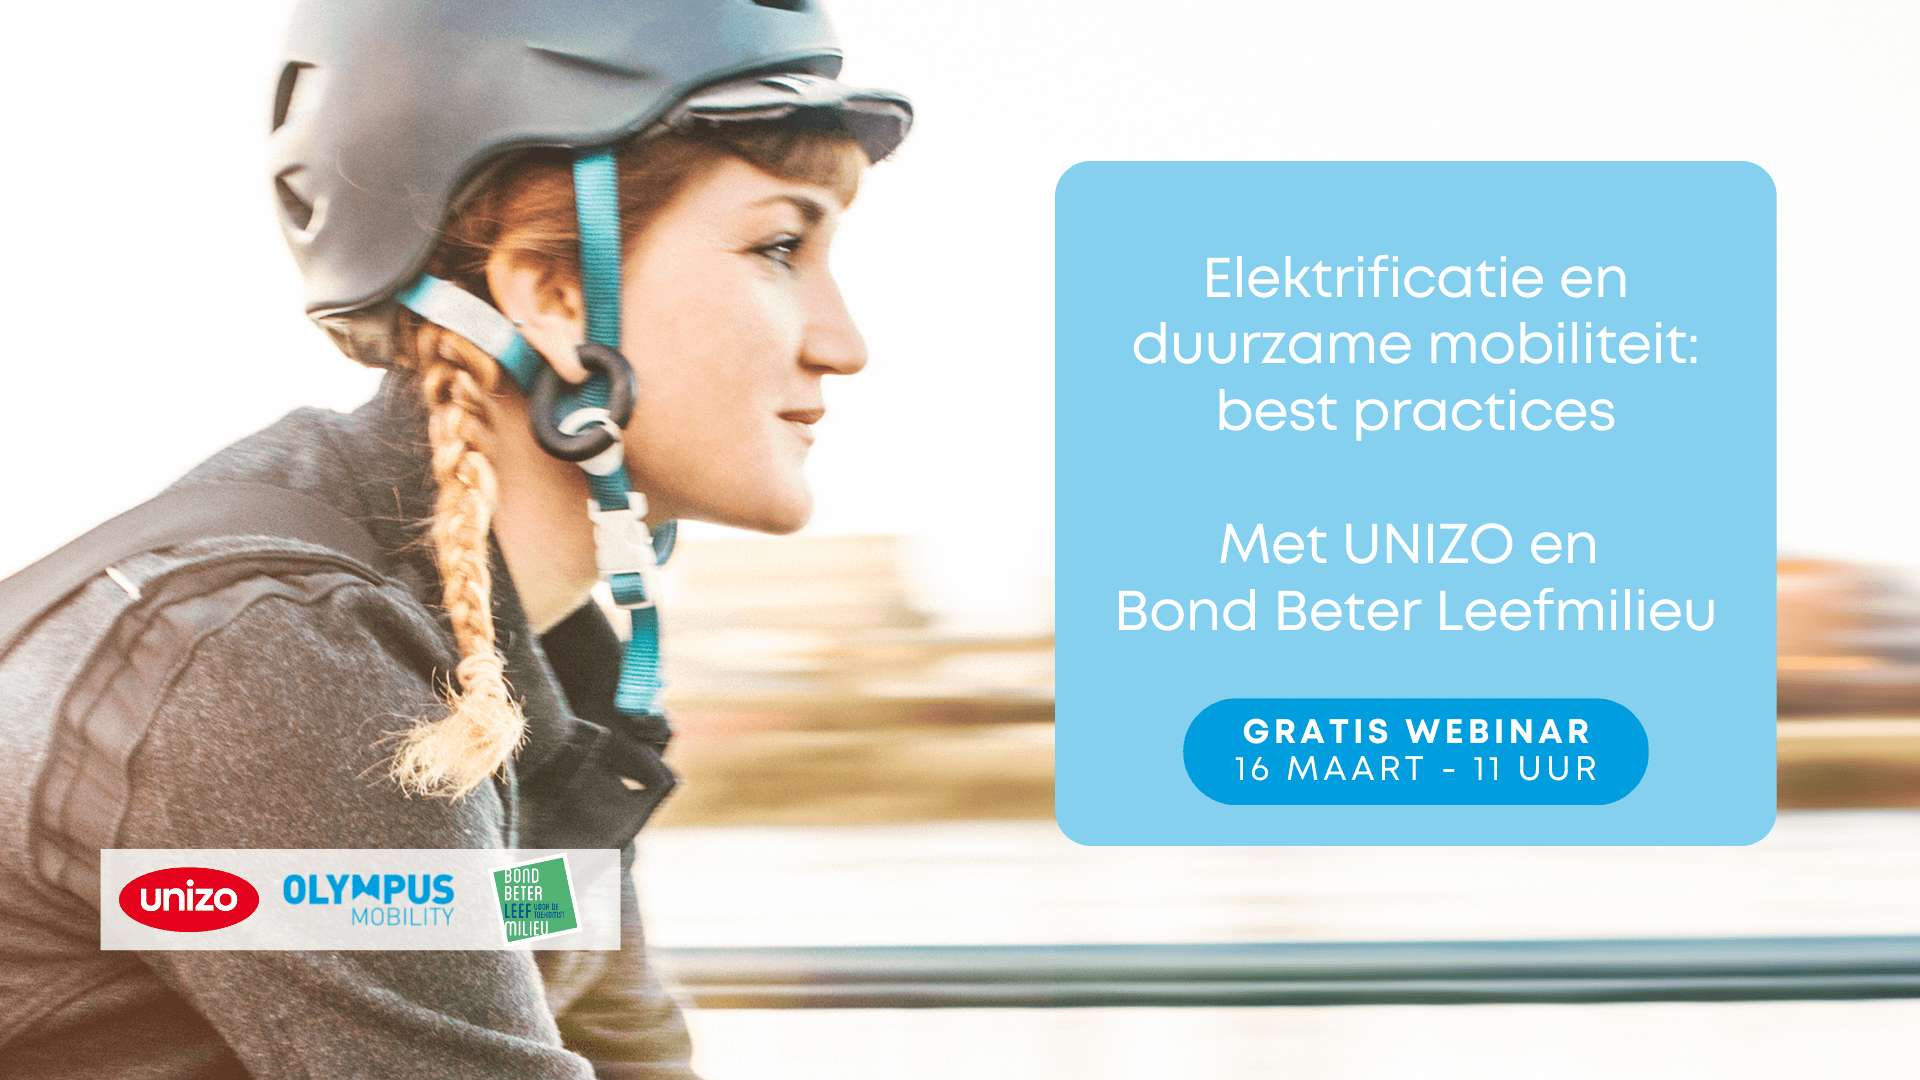 Webinar Olympus Mobility: elektrificatie en een duurzaam mobiliteitsbeleid best practices met UNIZO en Bond Beter Leefmilieu